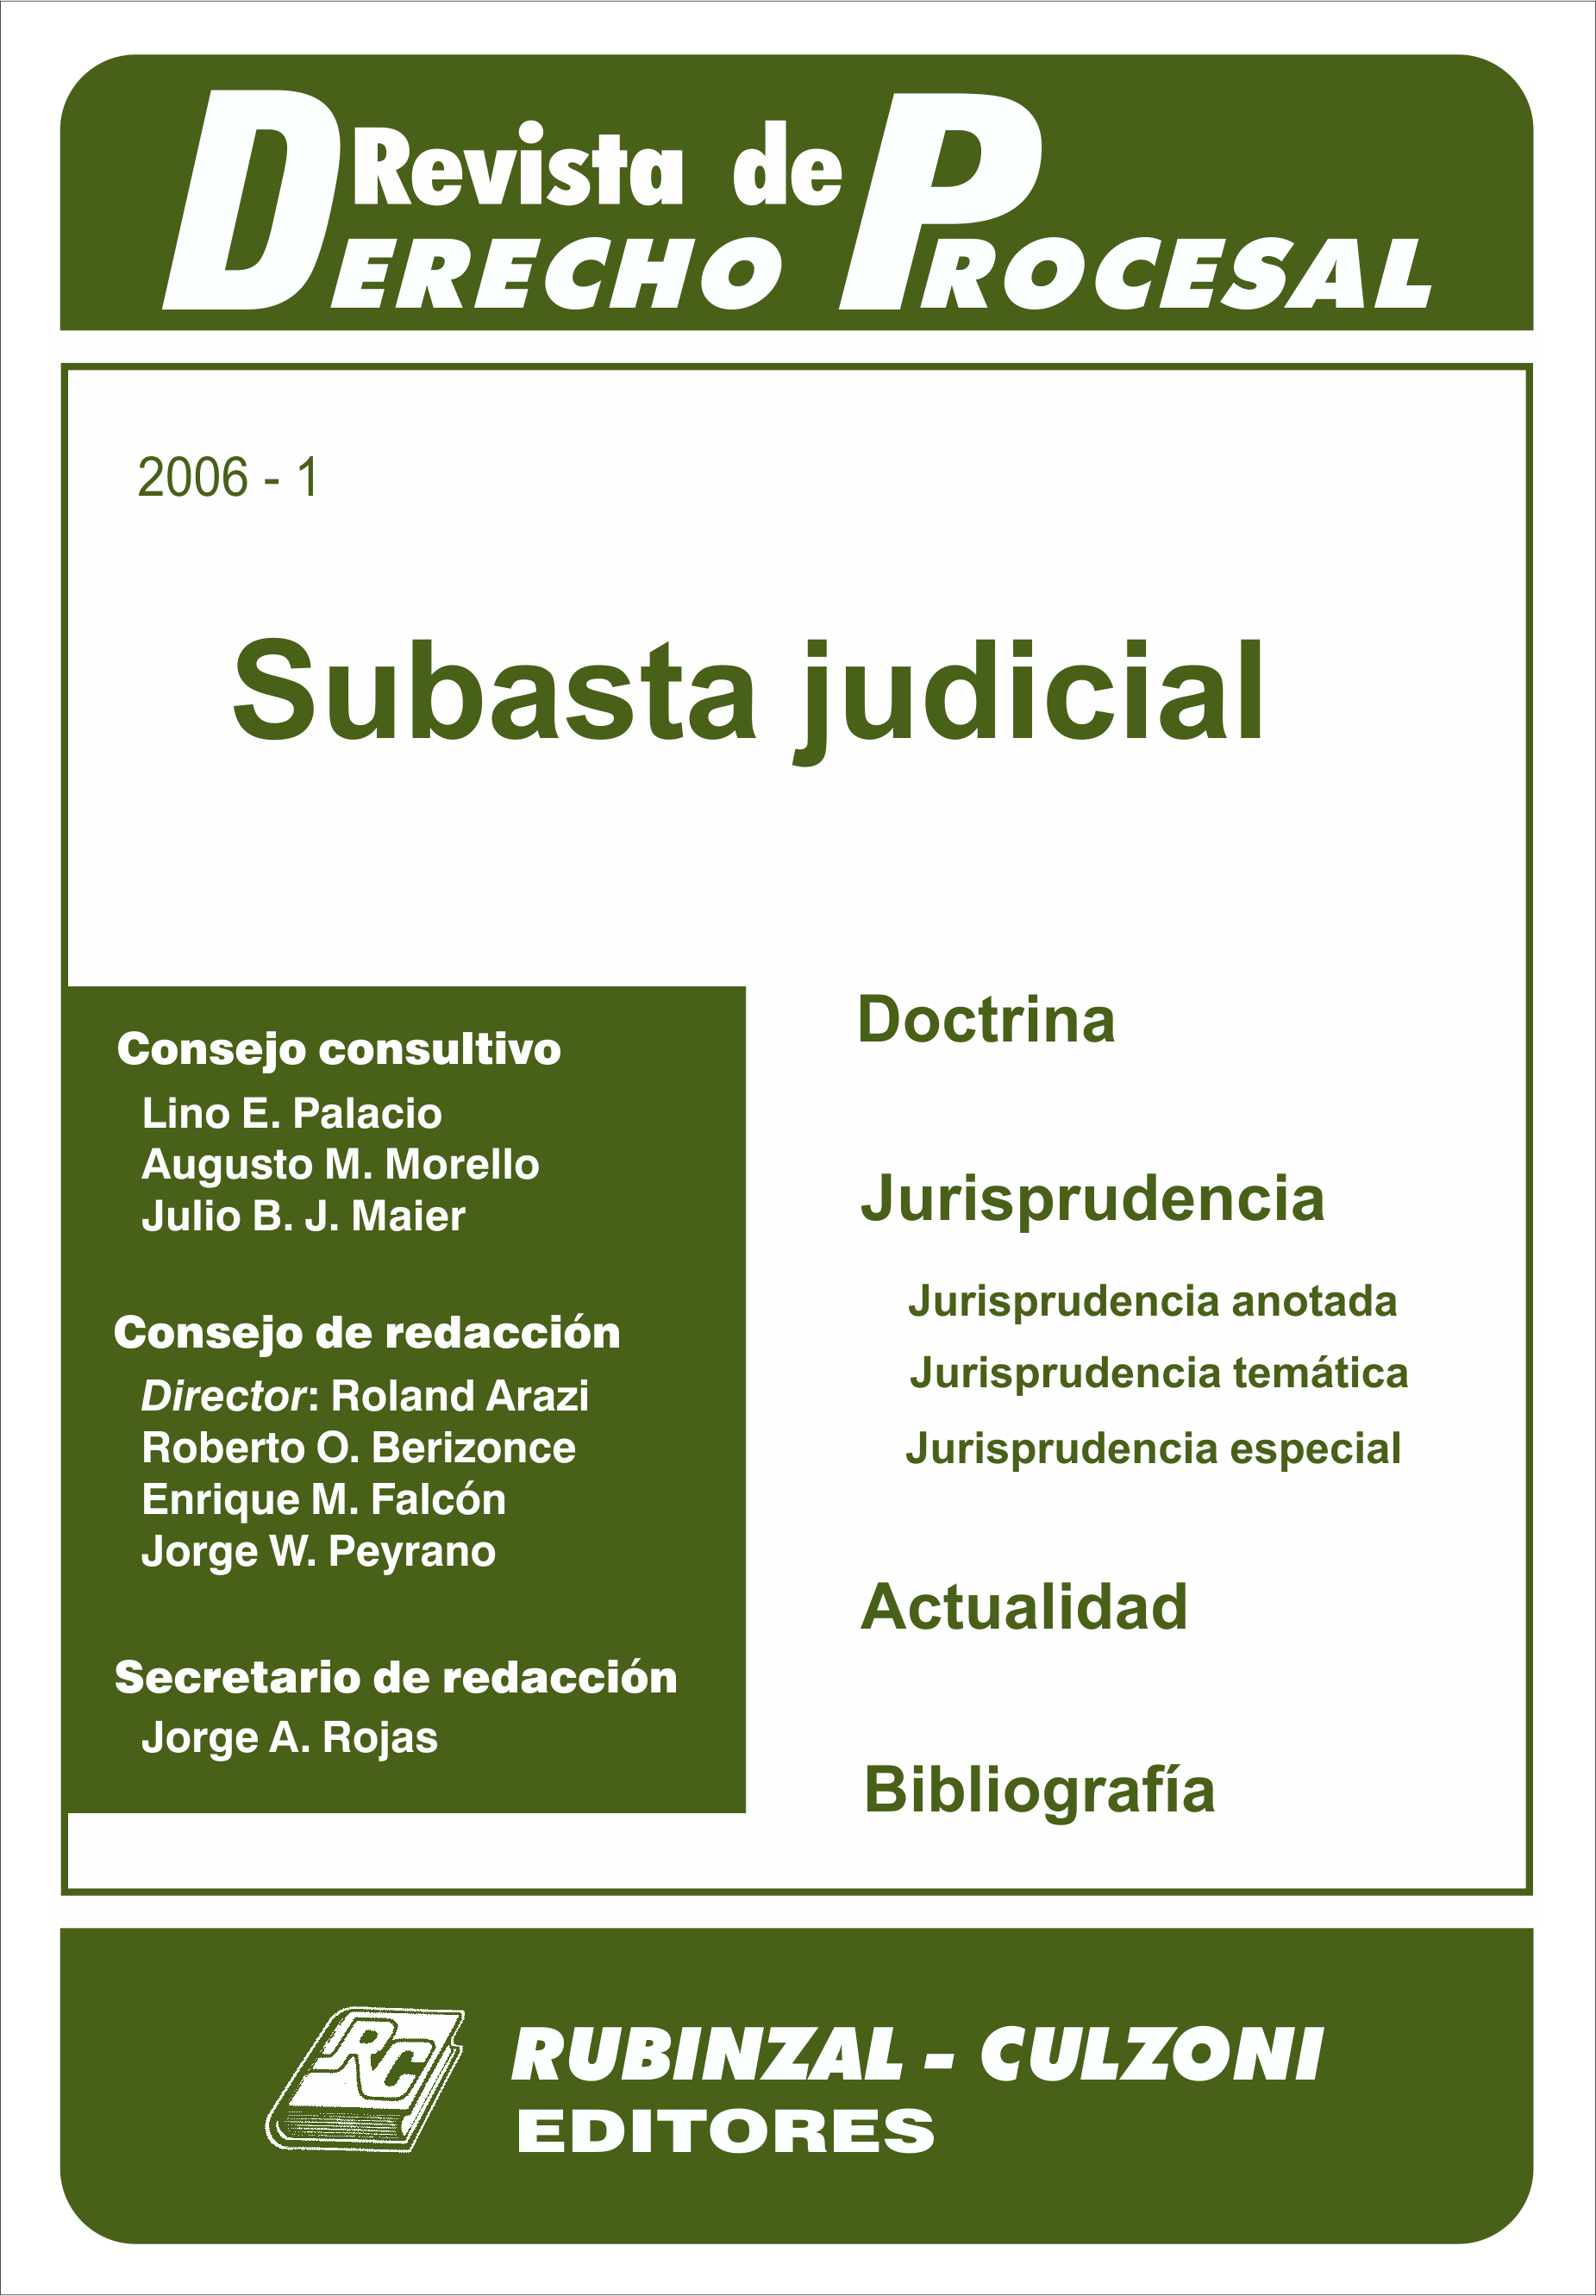 Revista de Derecho Procesal - Subasta judicial.